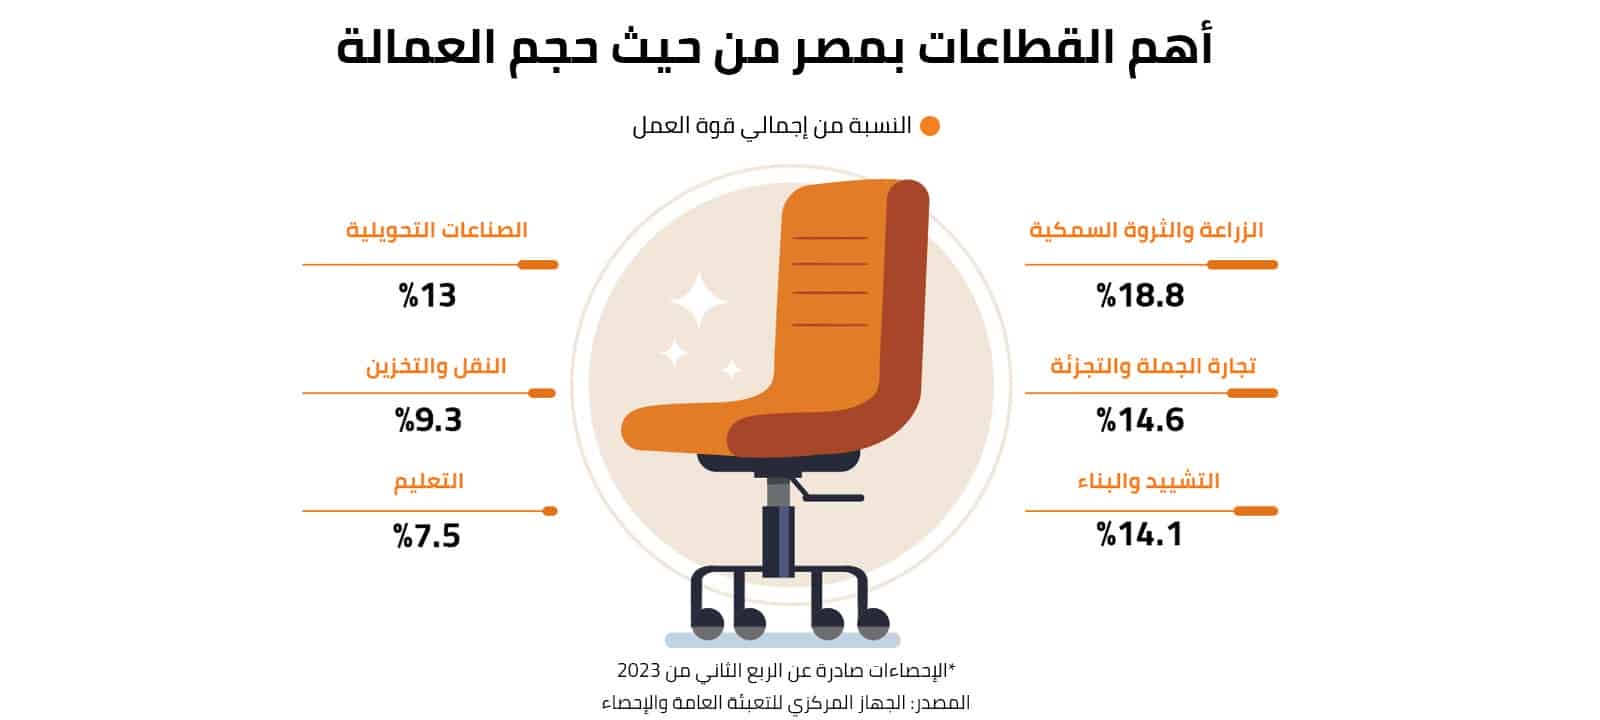 أهم القطاعات بمصر من حيث حجم العمالة 